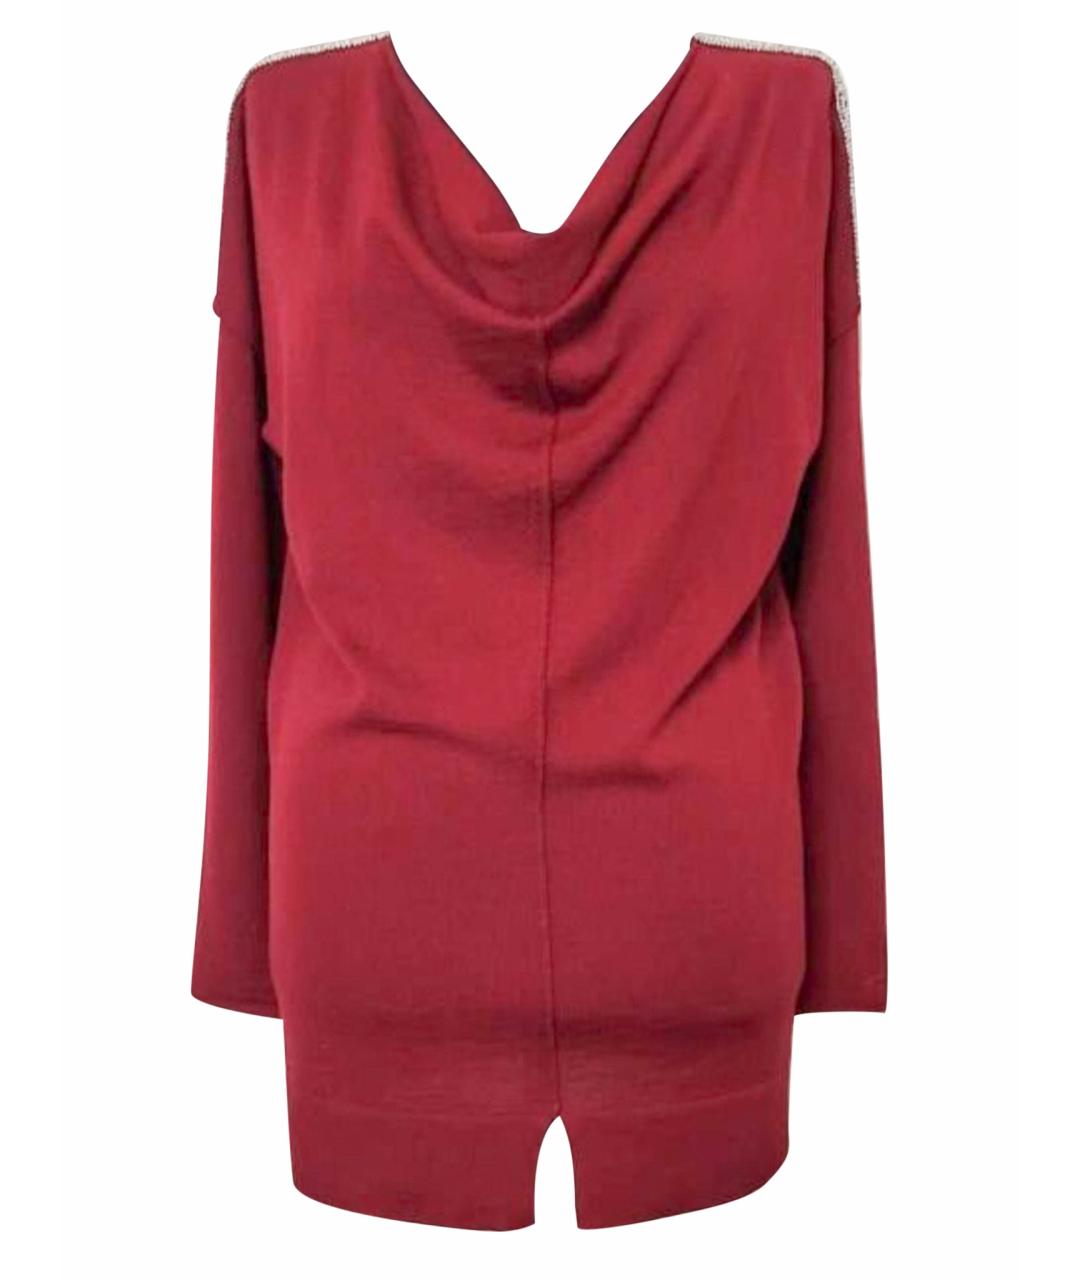 FALCONERI Бордовый шерстяной джемпер / свитер, фото 1